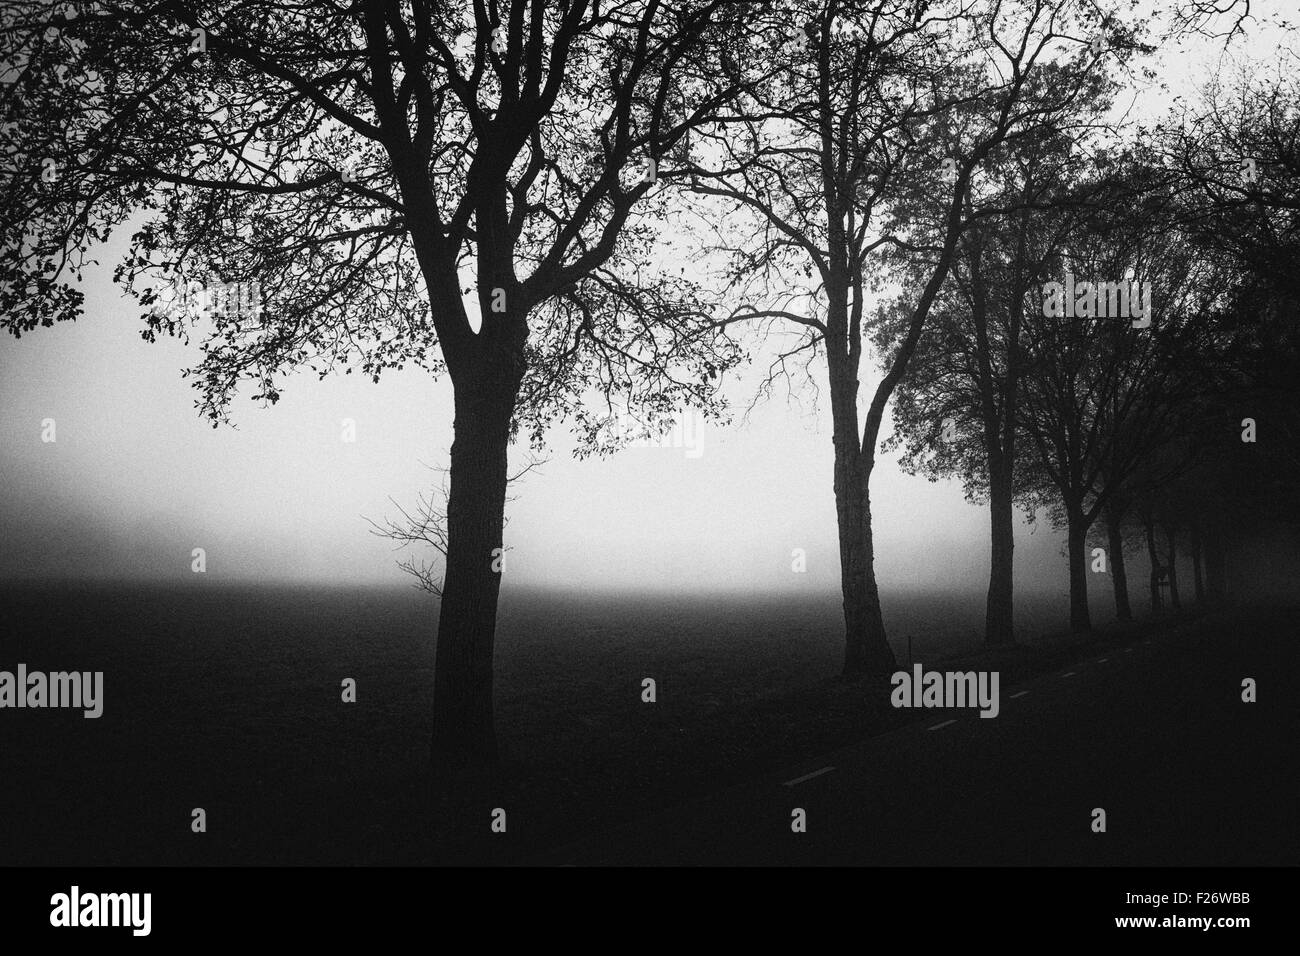 Le bois de chêne le long de la route secondaire avec brouillard lourd et brumeux, Pays-Bas, Europe, noir et blanc, grain solide Banque D'Images